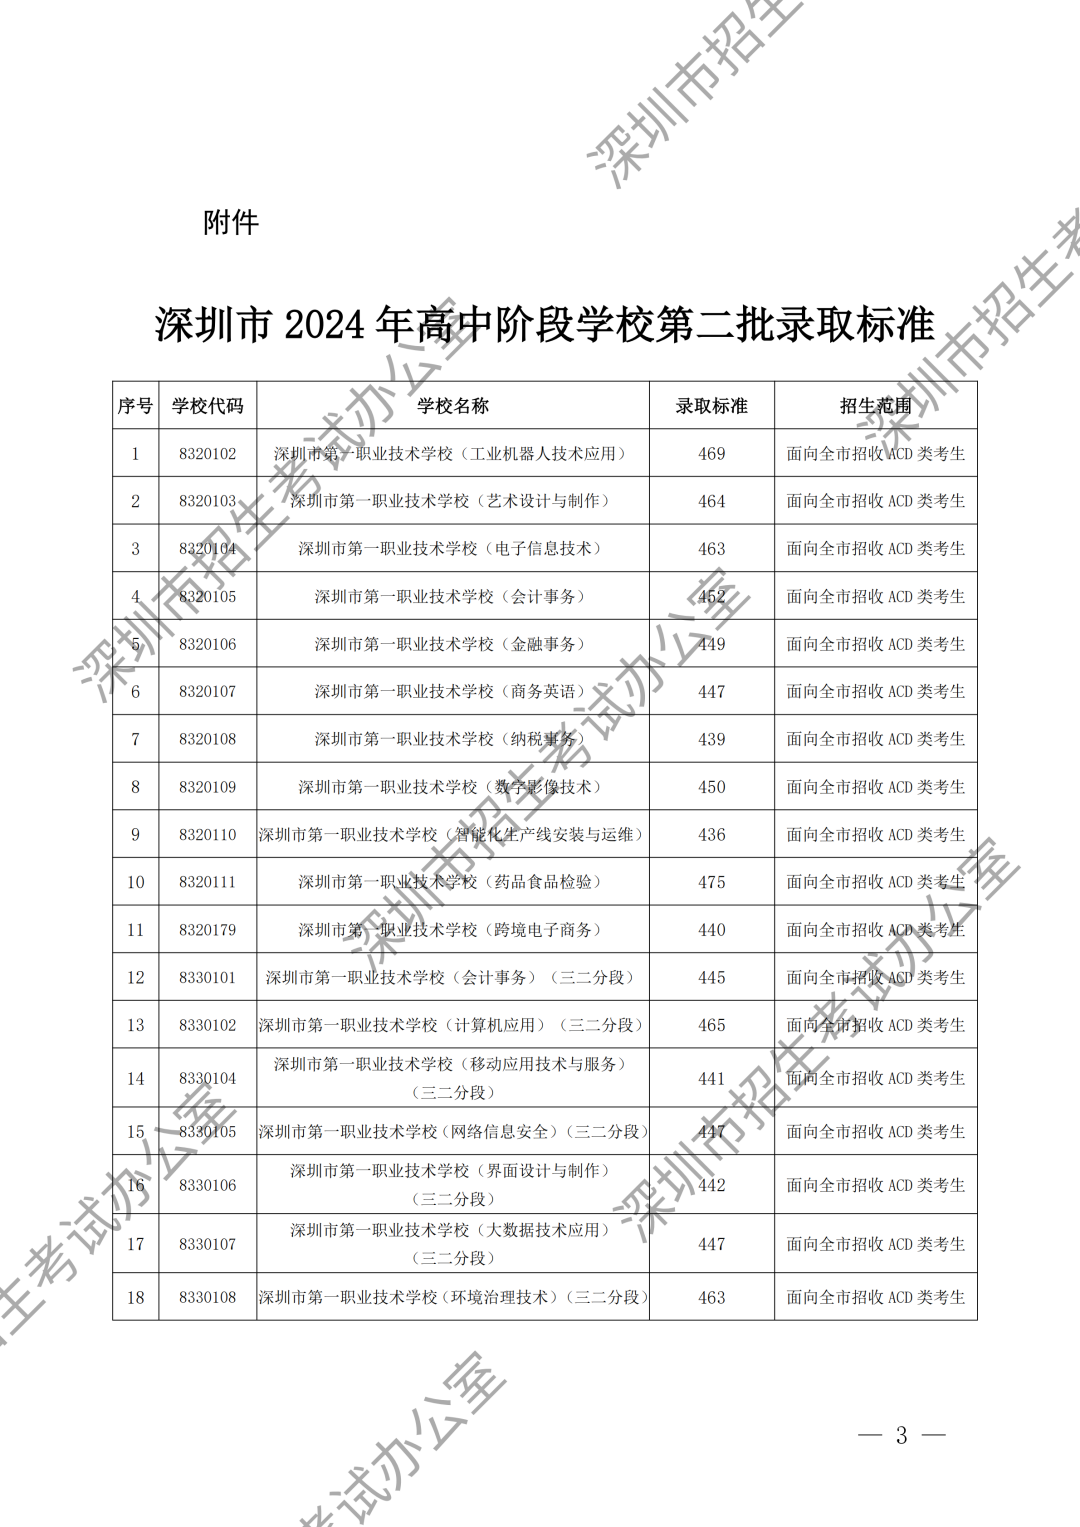 （水印）深圳市招生考试办公室关于公布深圳市2024年高中阶段学校第二批录取标准的通知_02.png